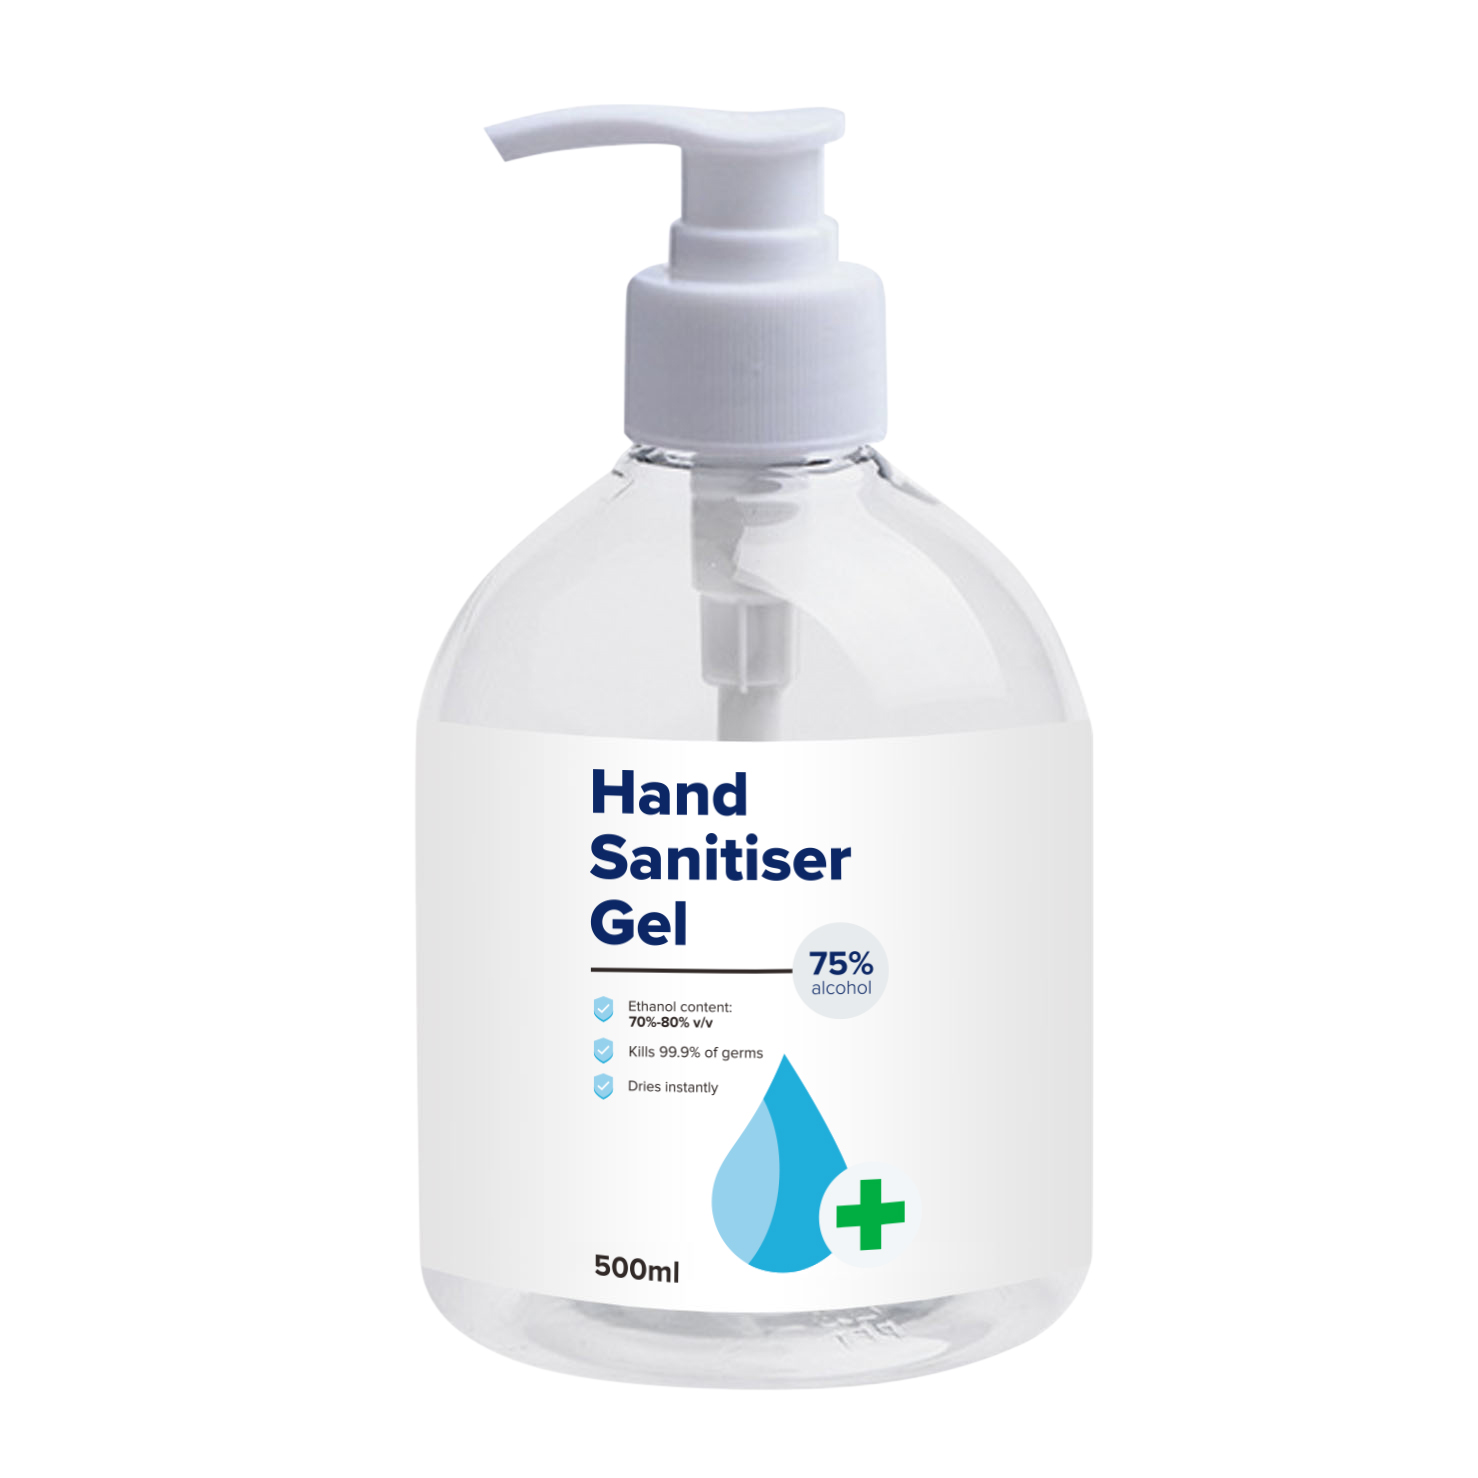 Hand Sanitiser - 500ml